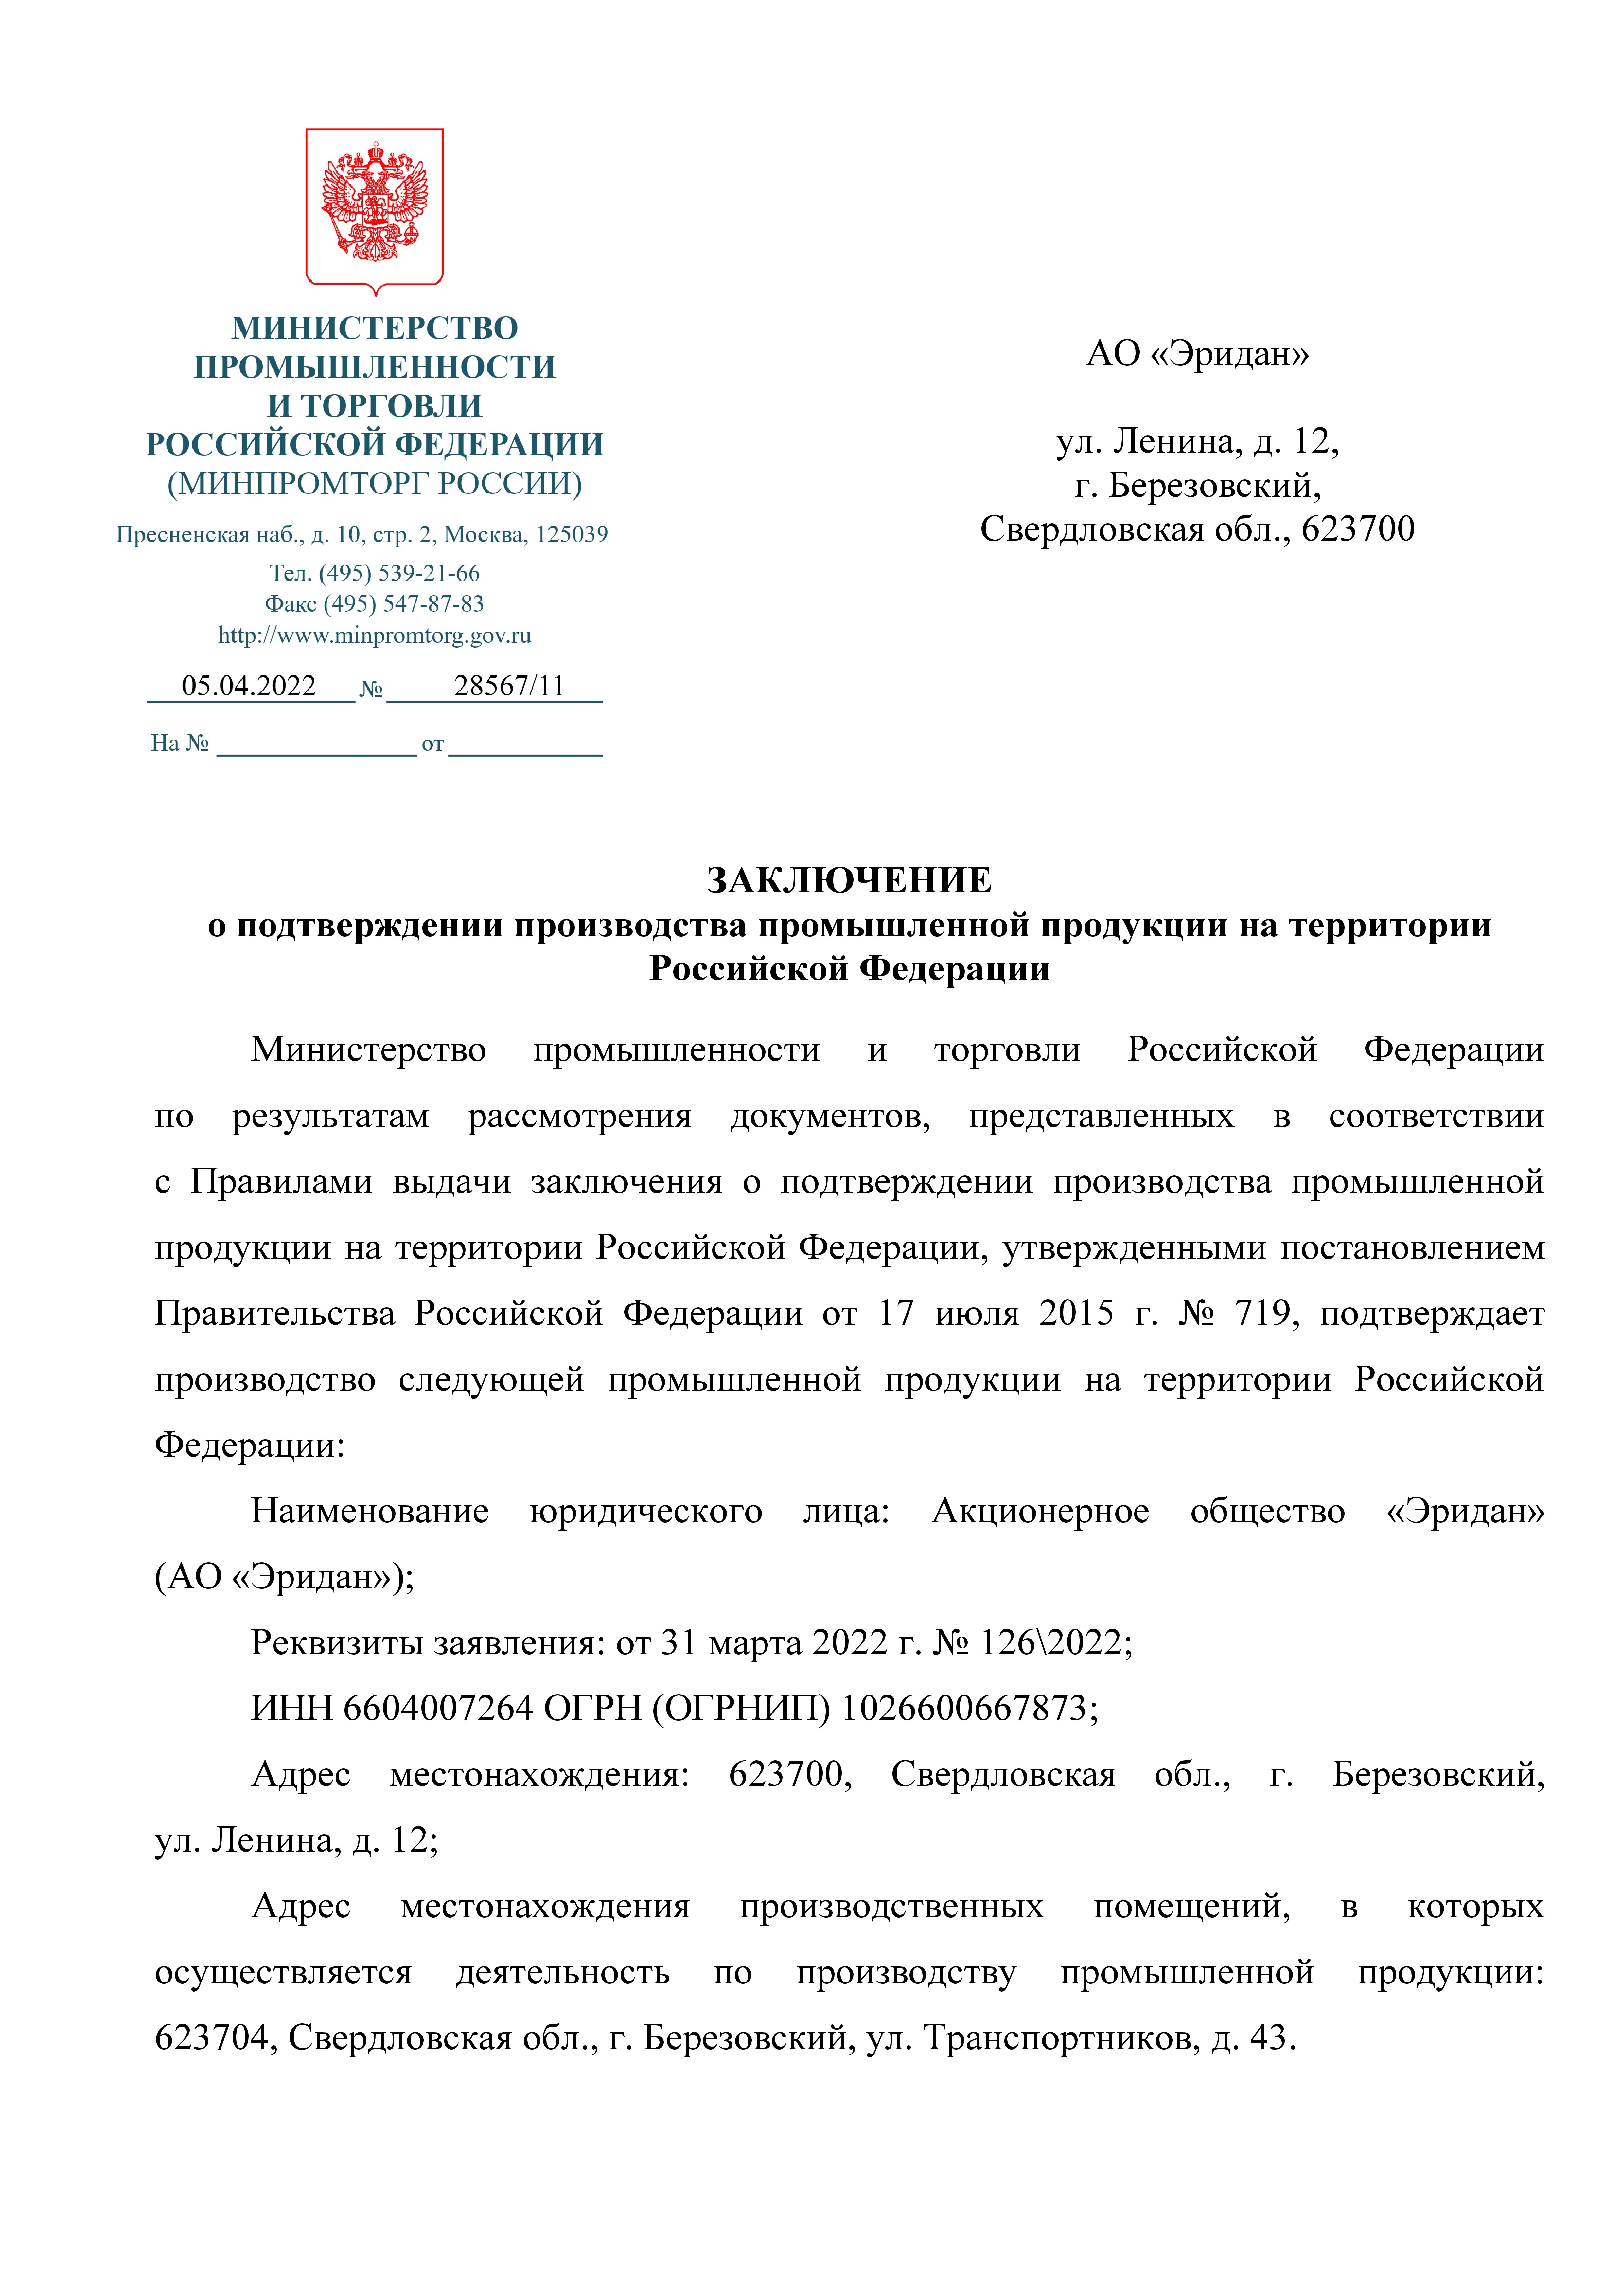 Заключение о подтверждении производства промышленной продукции на территории  Российской Федерации